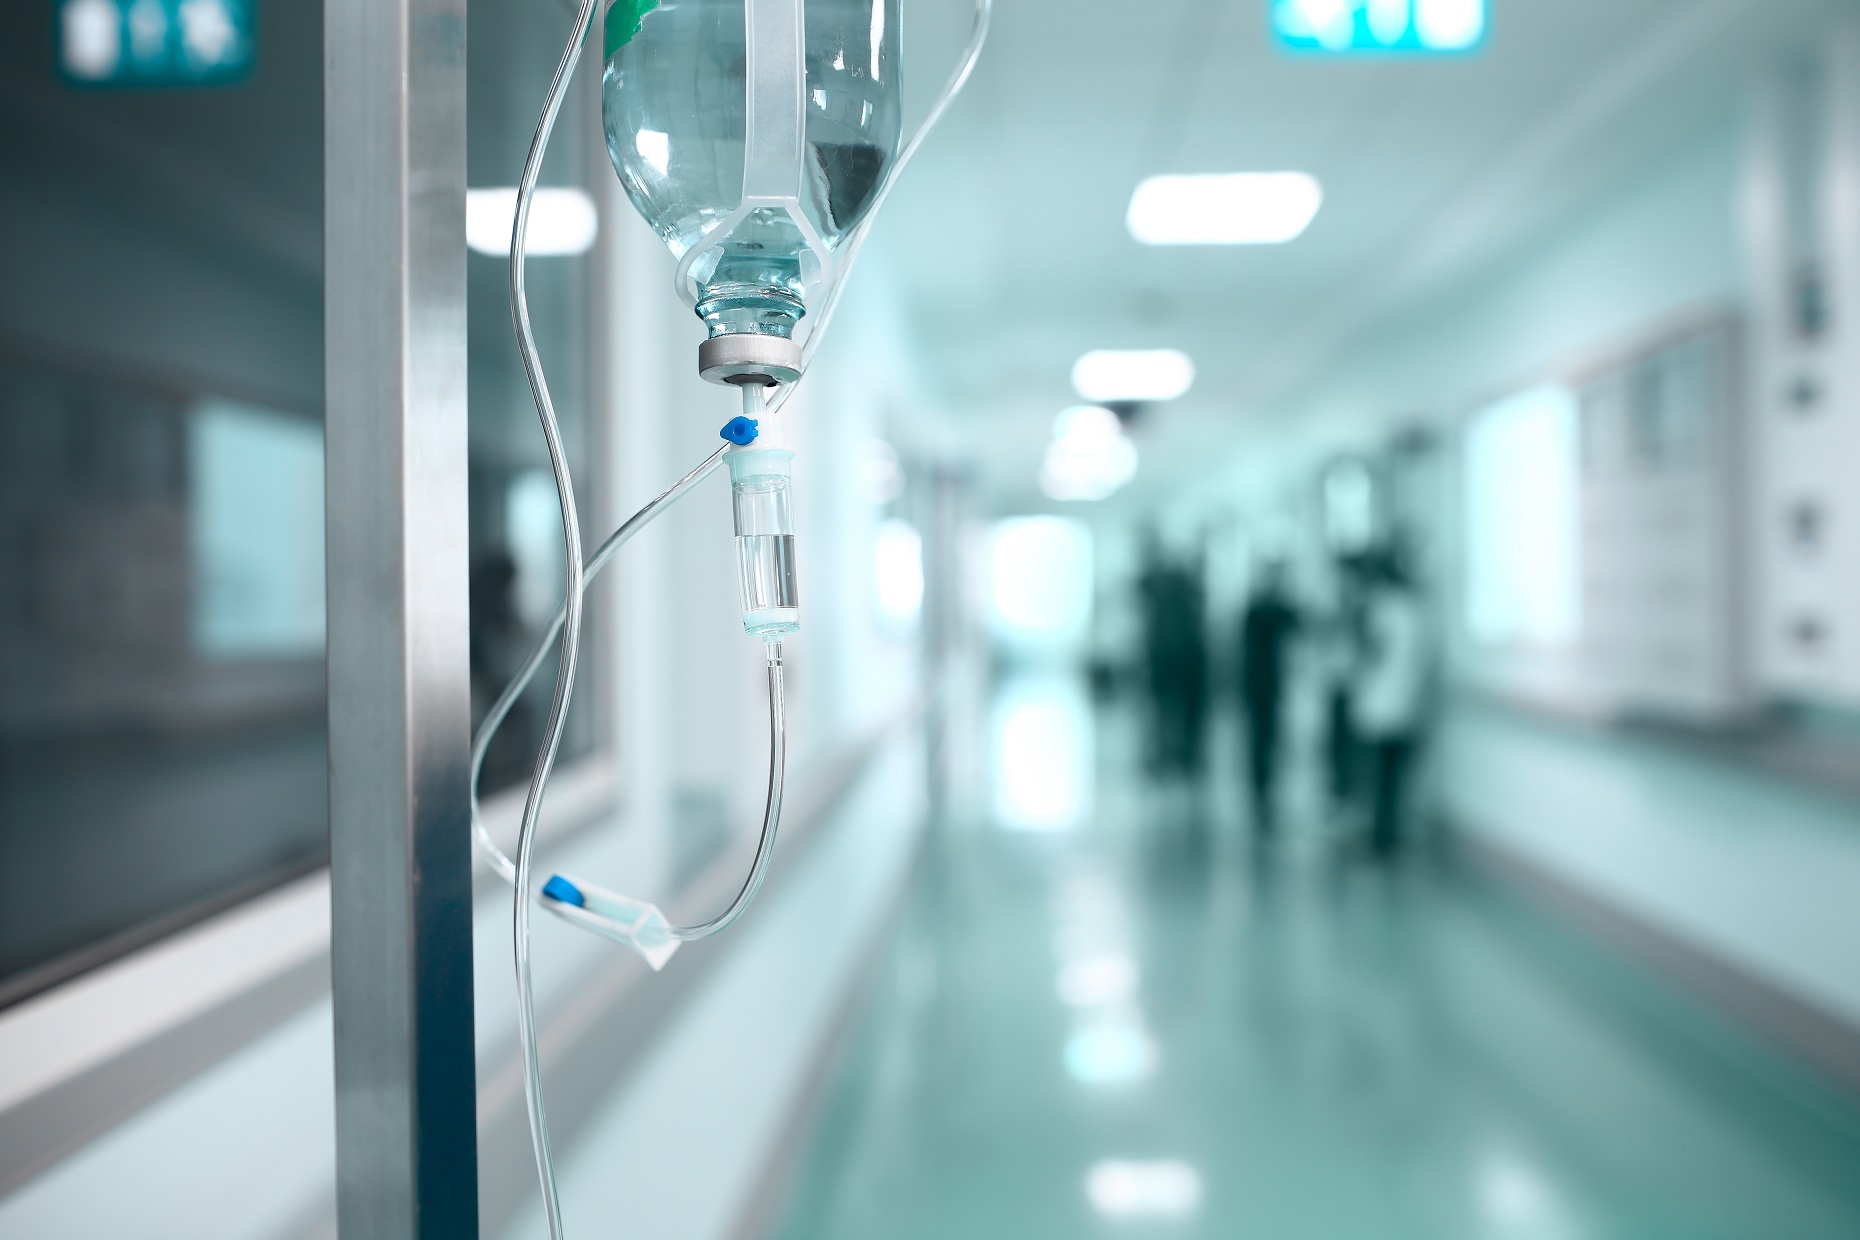 Un patient est décédé hier et cinq personnes ont été prises en charge dans le service de neurologie du CHU de Pontchaillou (Rennes) après avoir participé à un essai clinique. © sfam_photo, Shutterstock